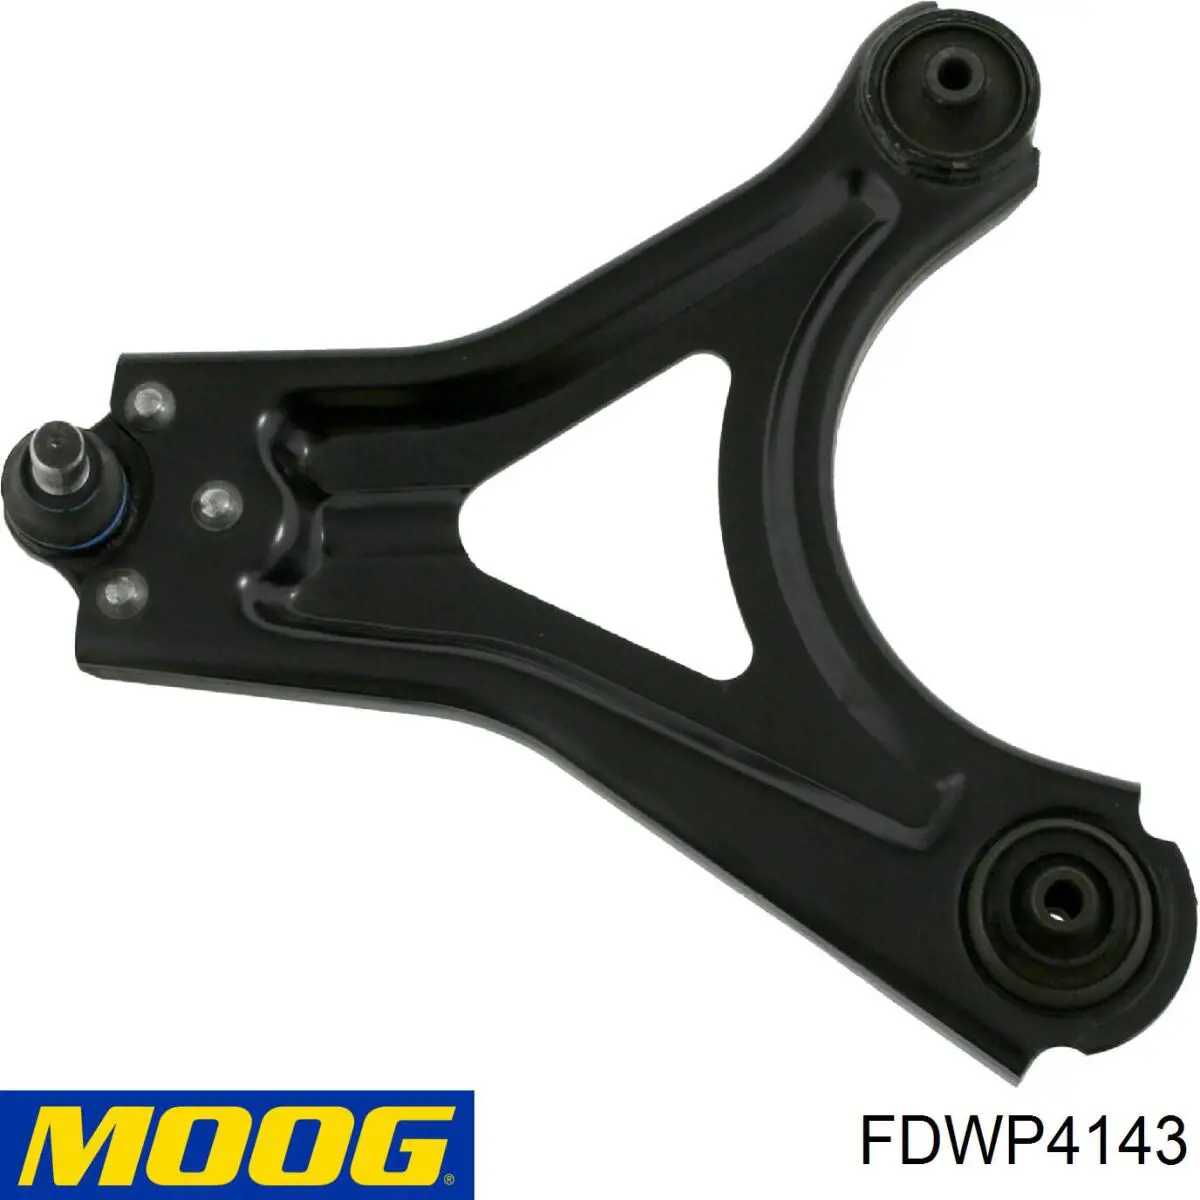 FDWP4143 Moog barra oscilante, suspensión de ruedas delantera, inferior izquierda